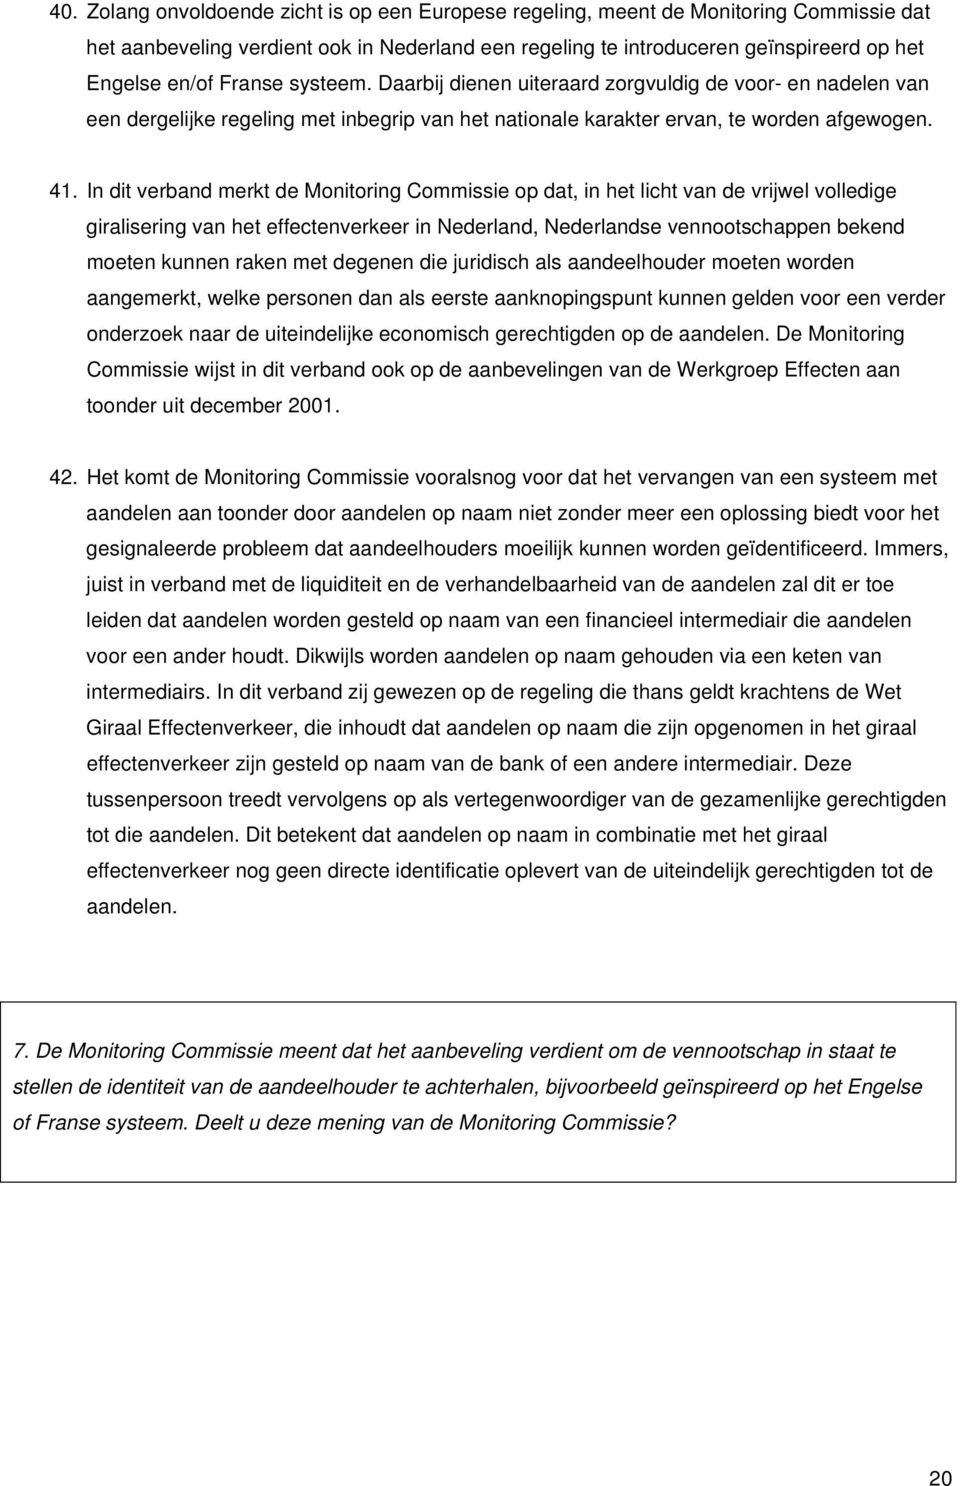 In dit verband merkt de Monitoring Commissie op dat, in het licht van de vrijwel volledige giralisering van het effectenverkeer in Nederland, Nederlandse vennootschappen bekend moeten kunnen raken